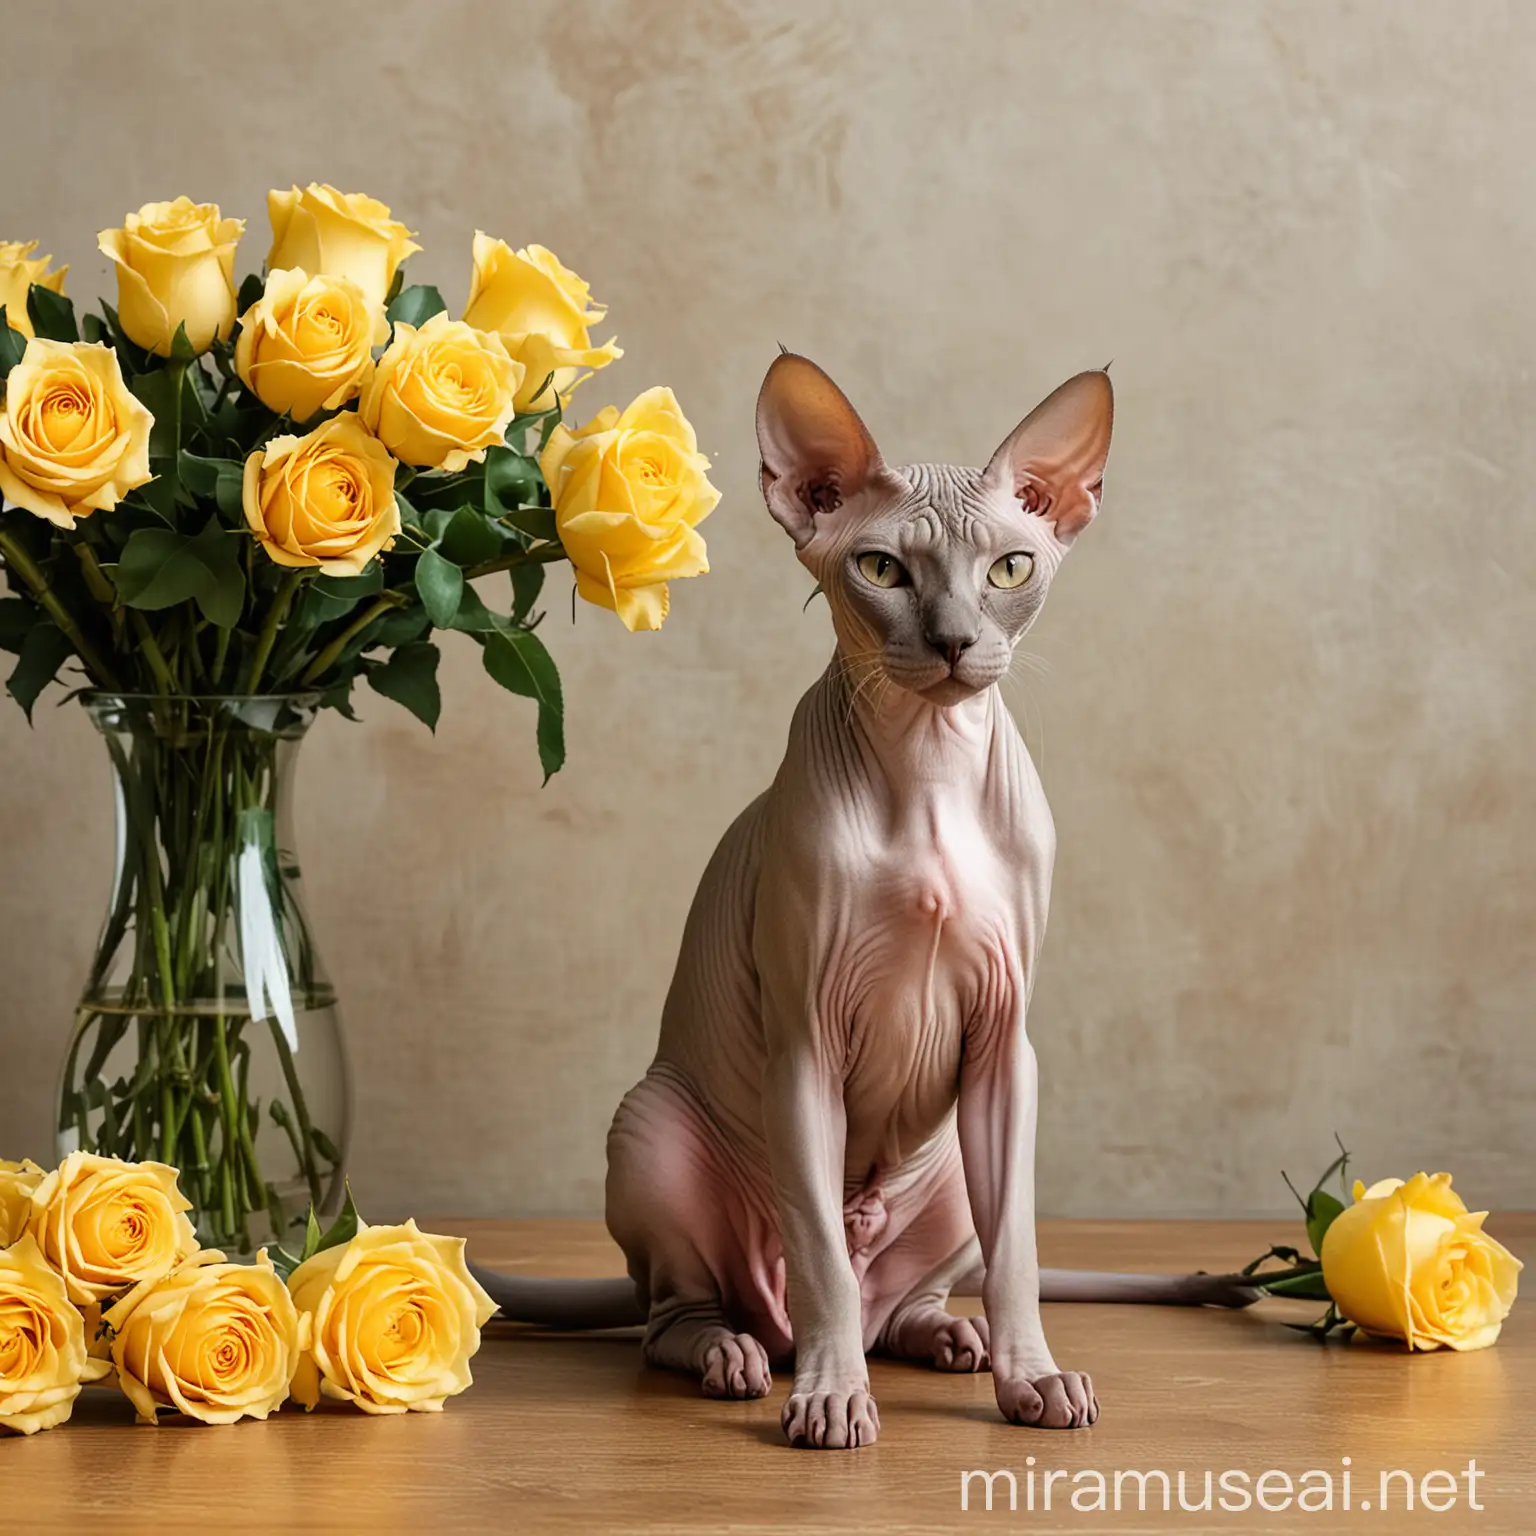 Кот породы сфинкс сидит рядом с вазой с желтыми розами